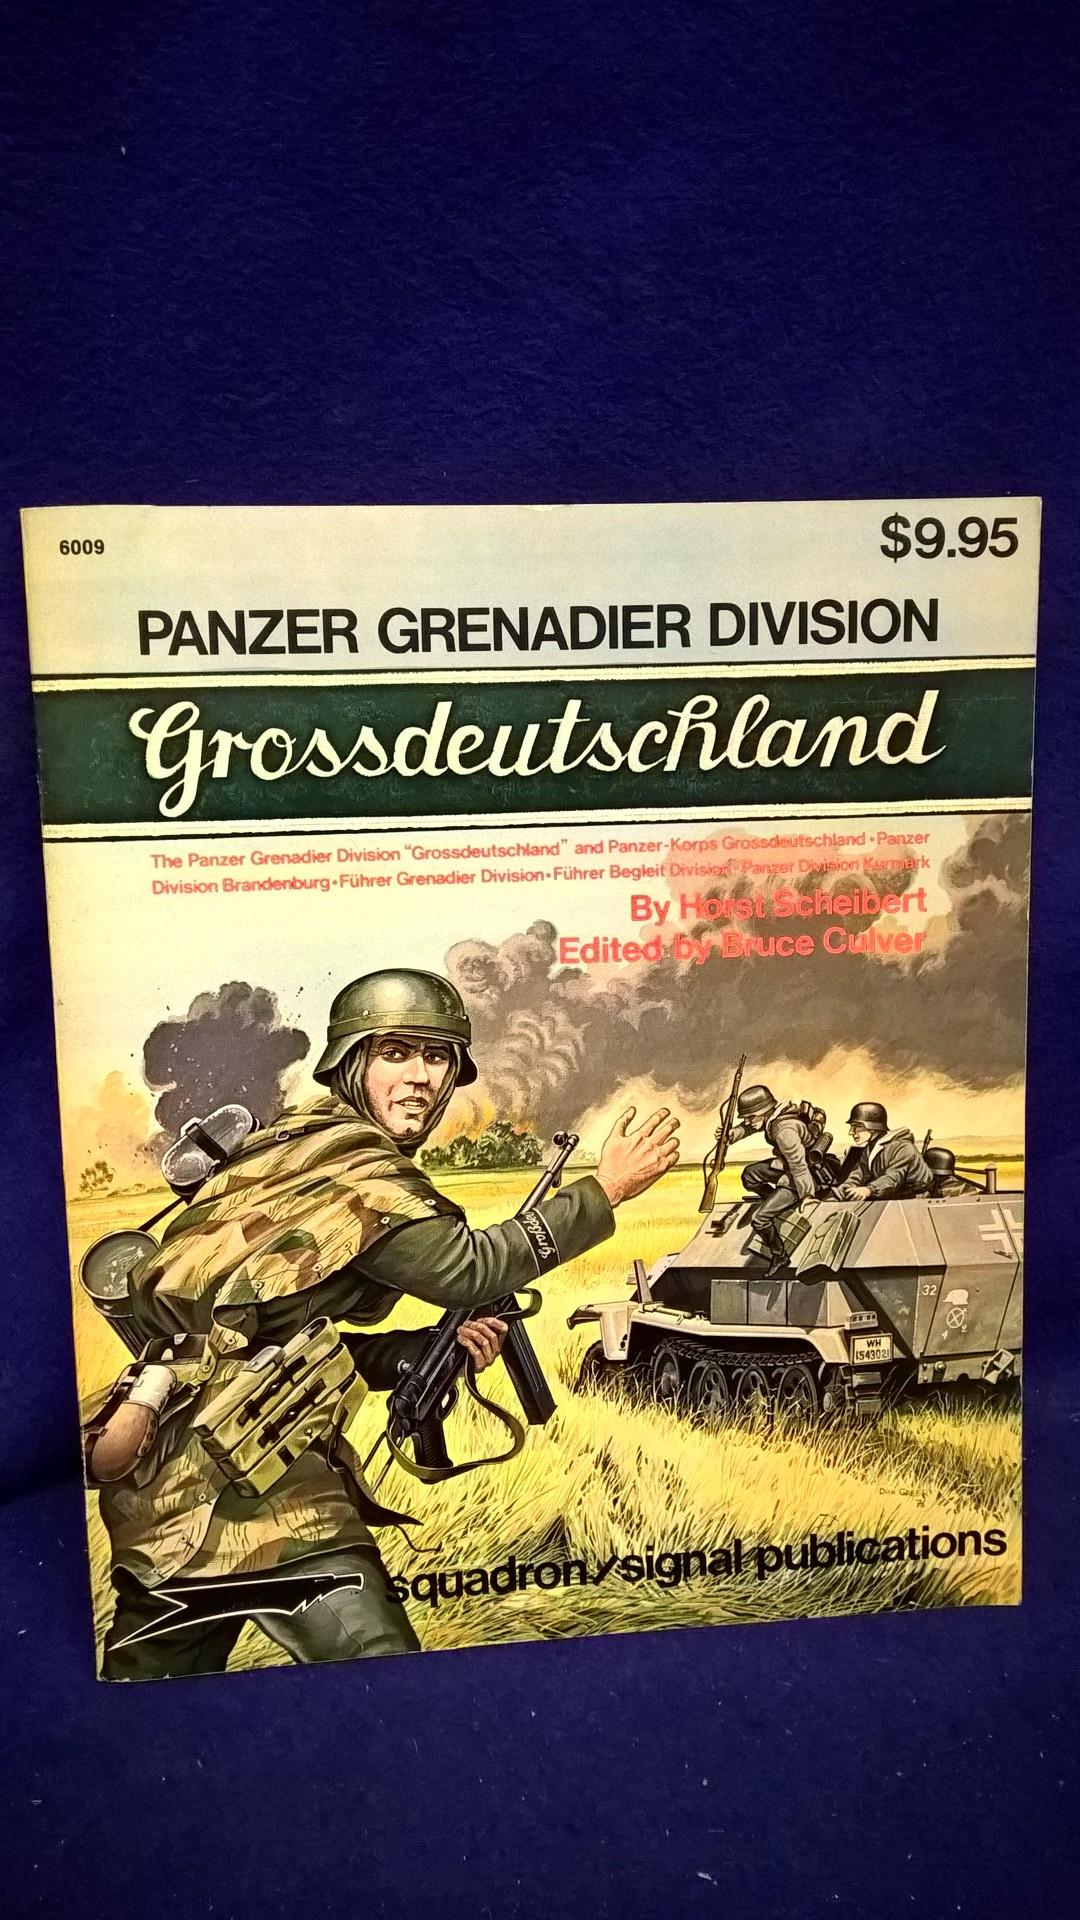 Panzer Grenadier Division Grossdeutschland. The Panzer Grenadier Division "Grossdeutschland" and Panzer-Korps Grossdeutschland - Panzer Division Brandenburg - Führer Grenadier Division - Führer Begleit Division - Panzer Division Kurmark. A Pictorial Histo